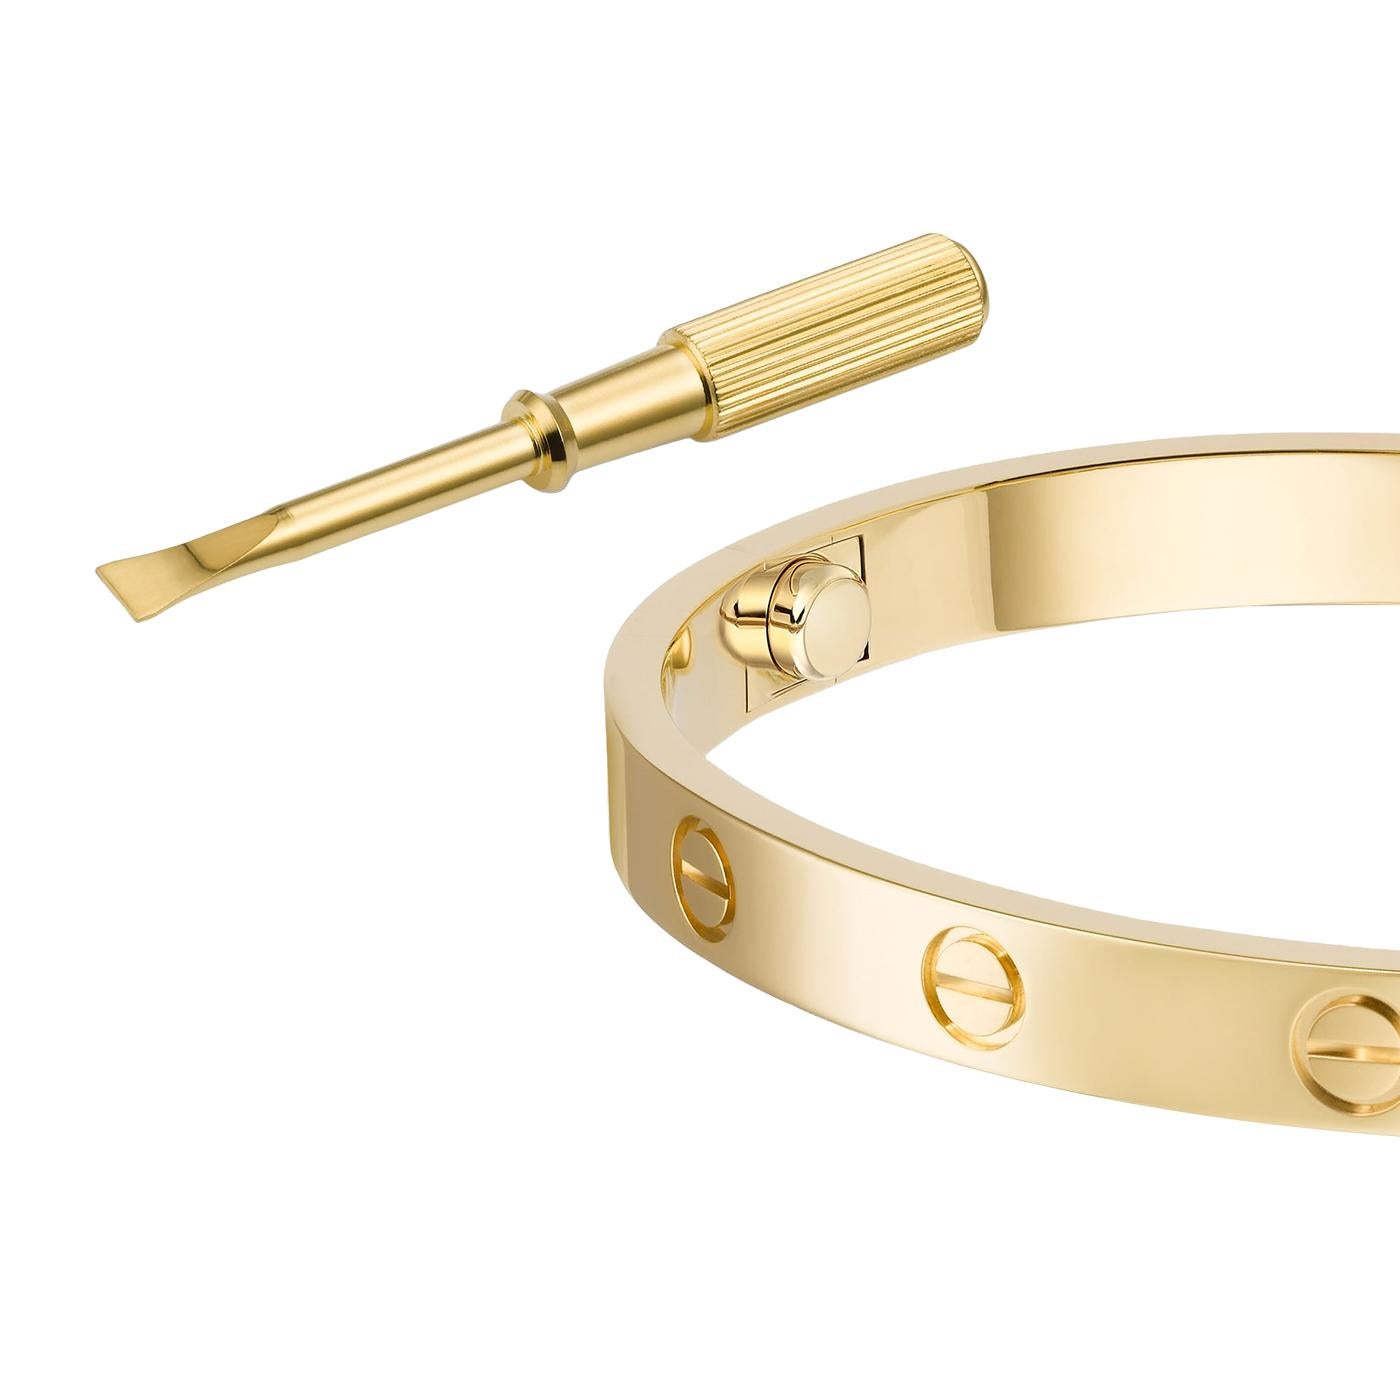 LOVE-Armband, 18K Gelbgold (750/1000). Wird mit einem Schraubendreher geliefert. Breite: 6,1 mm. Das 1969 in New York kreierte LOVE-Armband ist eine Ikone des Schmuckdesigns: ein eng anliegendes, ovales Armband aus zwei starren Bögen, das am